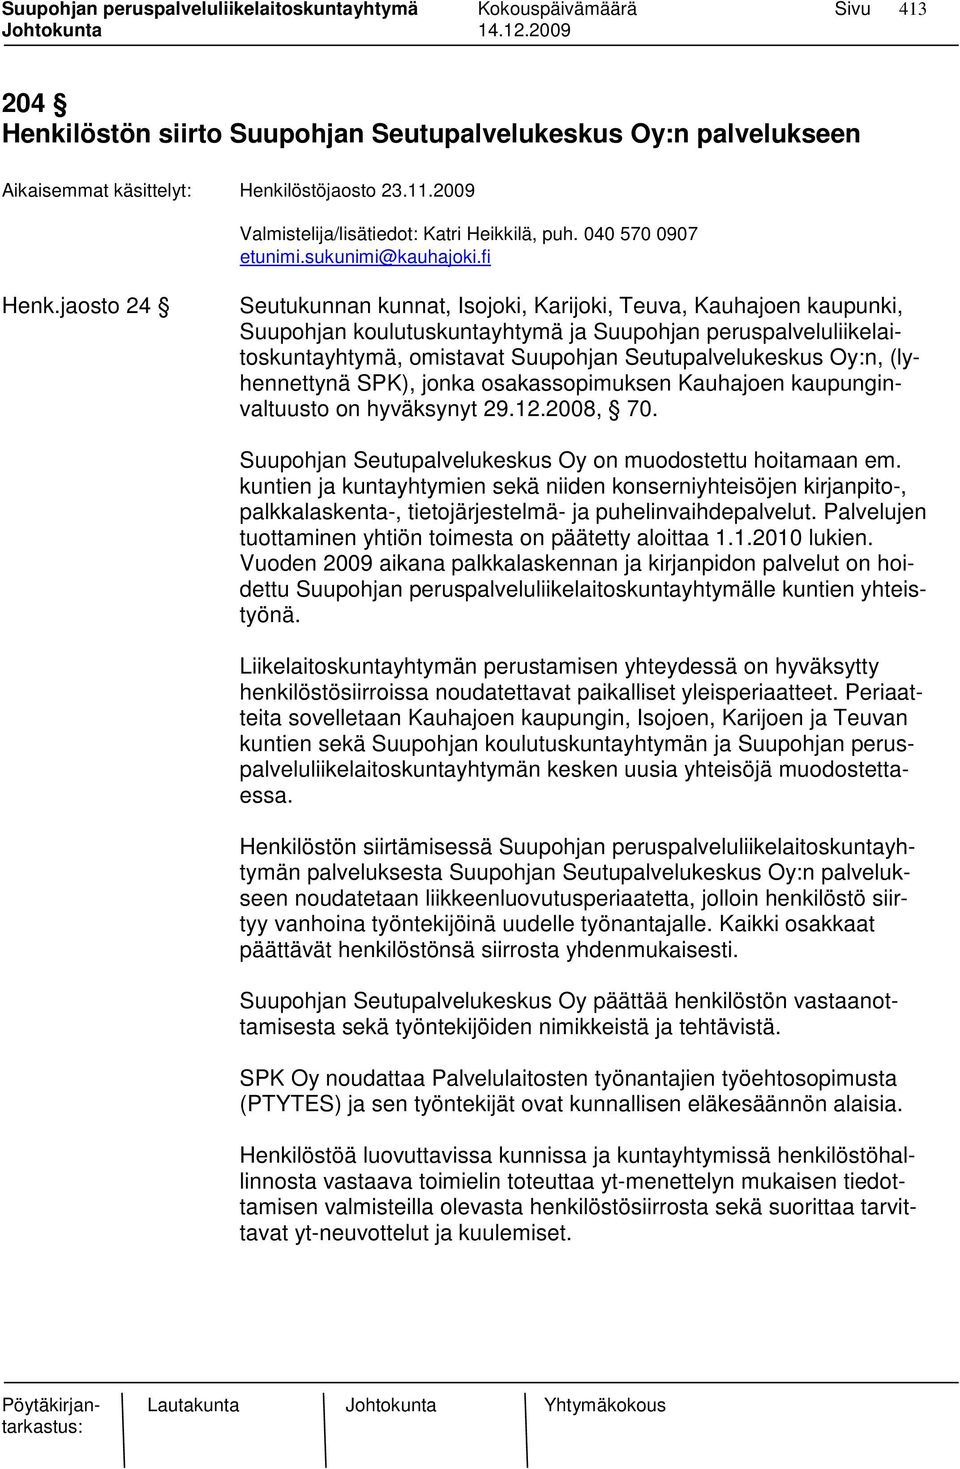 (lyhennettynä SPK), jonka osakassopimuksen Kauhajoen kaupunginvaltuusto on hyväksynyt 29.12.2008, 70. Suupohjan Seutupalvelukeskus Oy on muodostettu hoitamaan em.